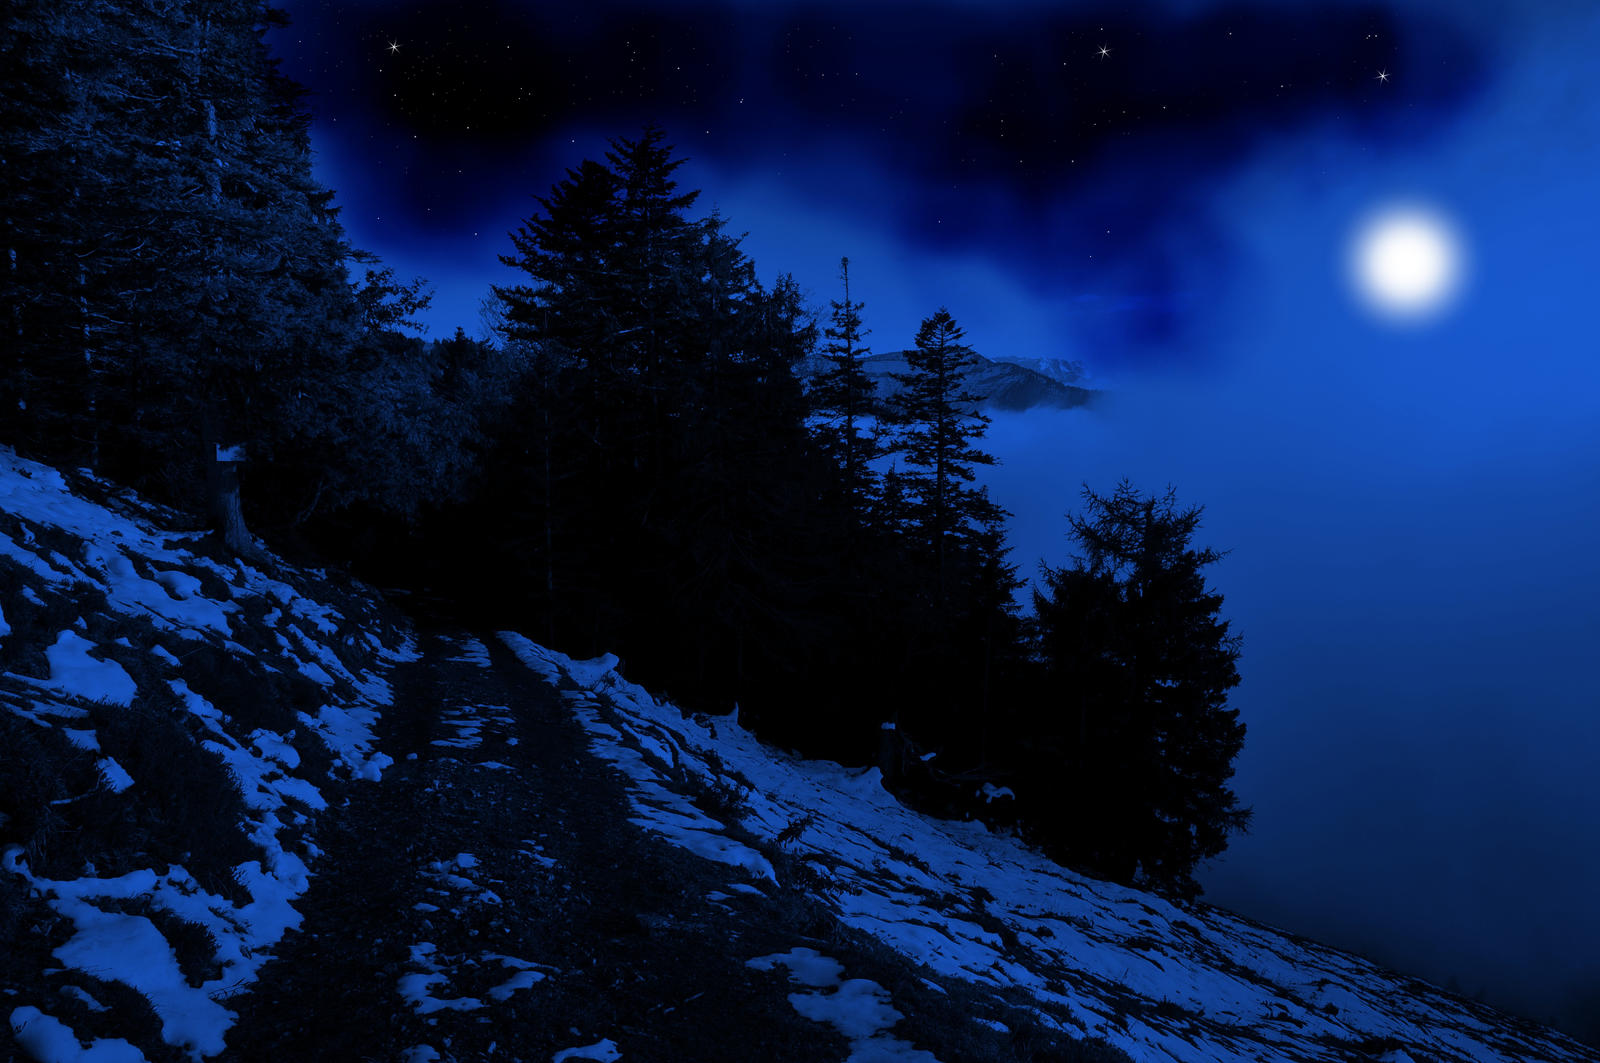 Blue Night Background By Burtn On DeviantArt